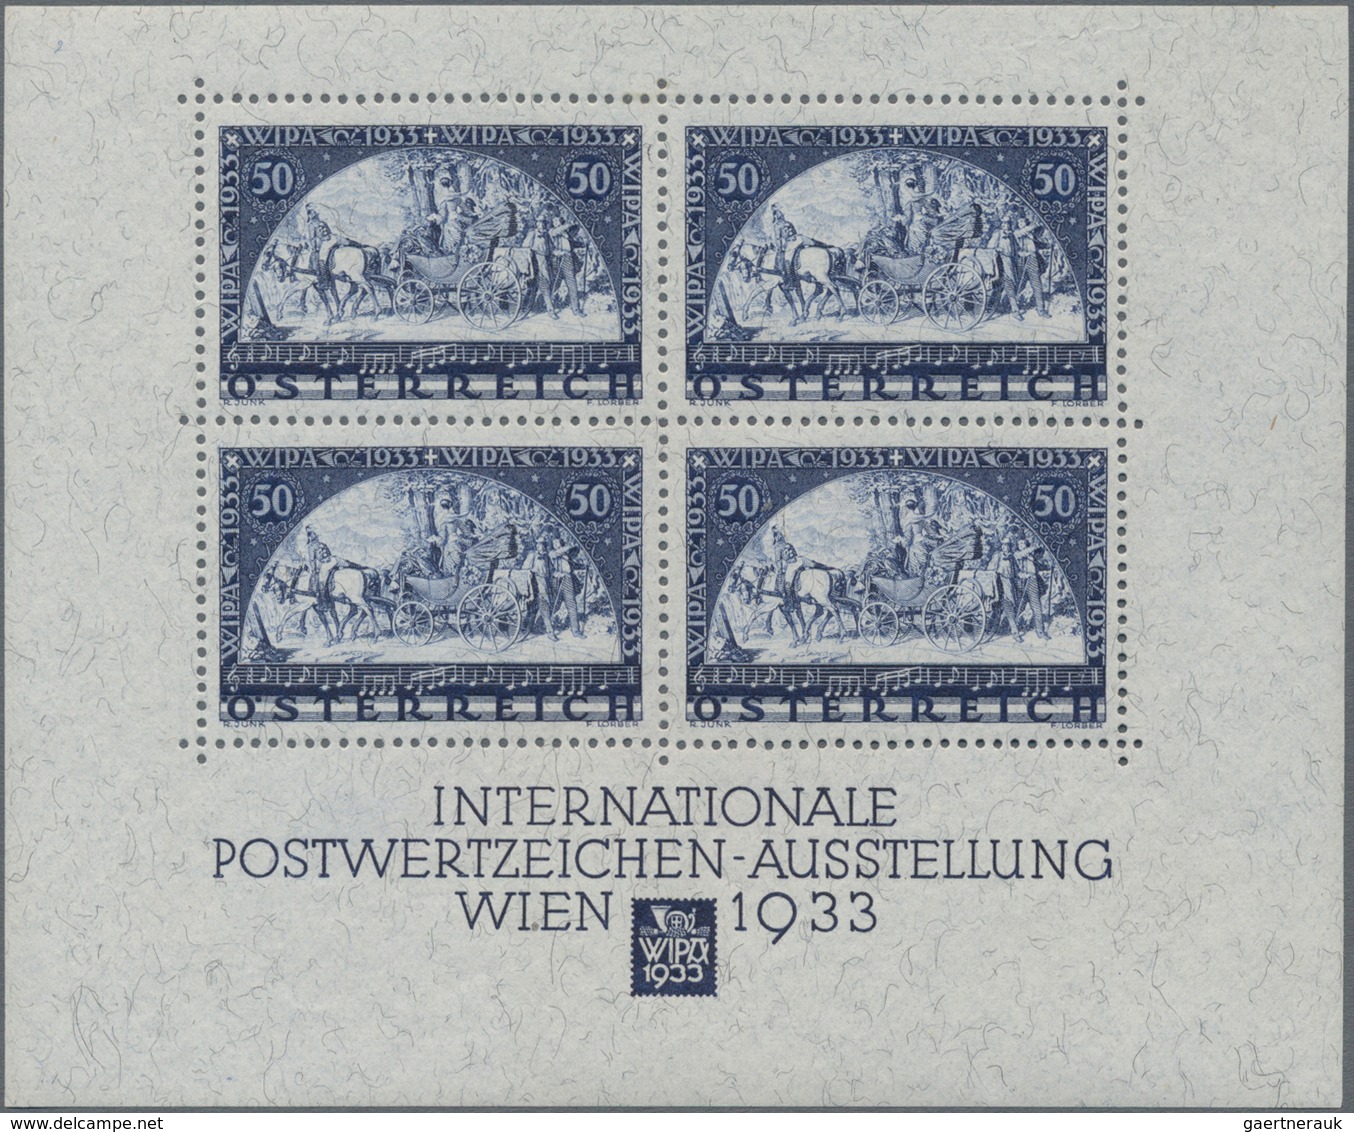 Nachlässe: 1840-2017: Großer, sehr umfangreicher Nachlass aus Österreich in weit über 200 Kartons un